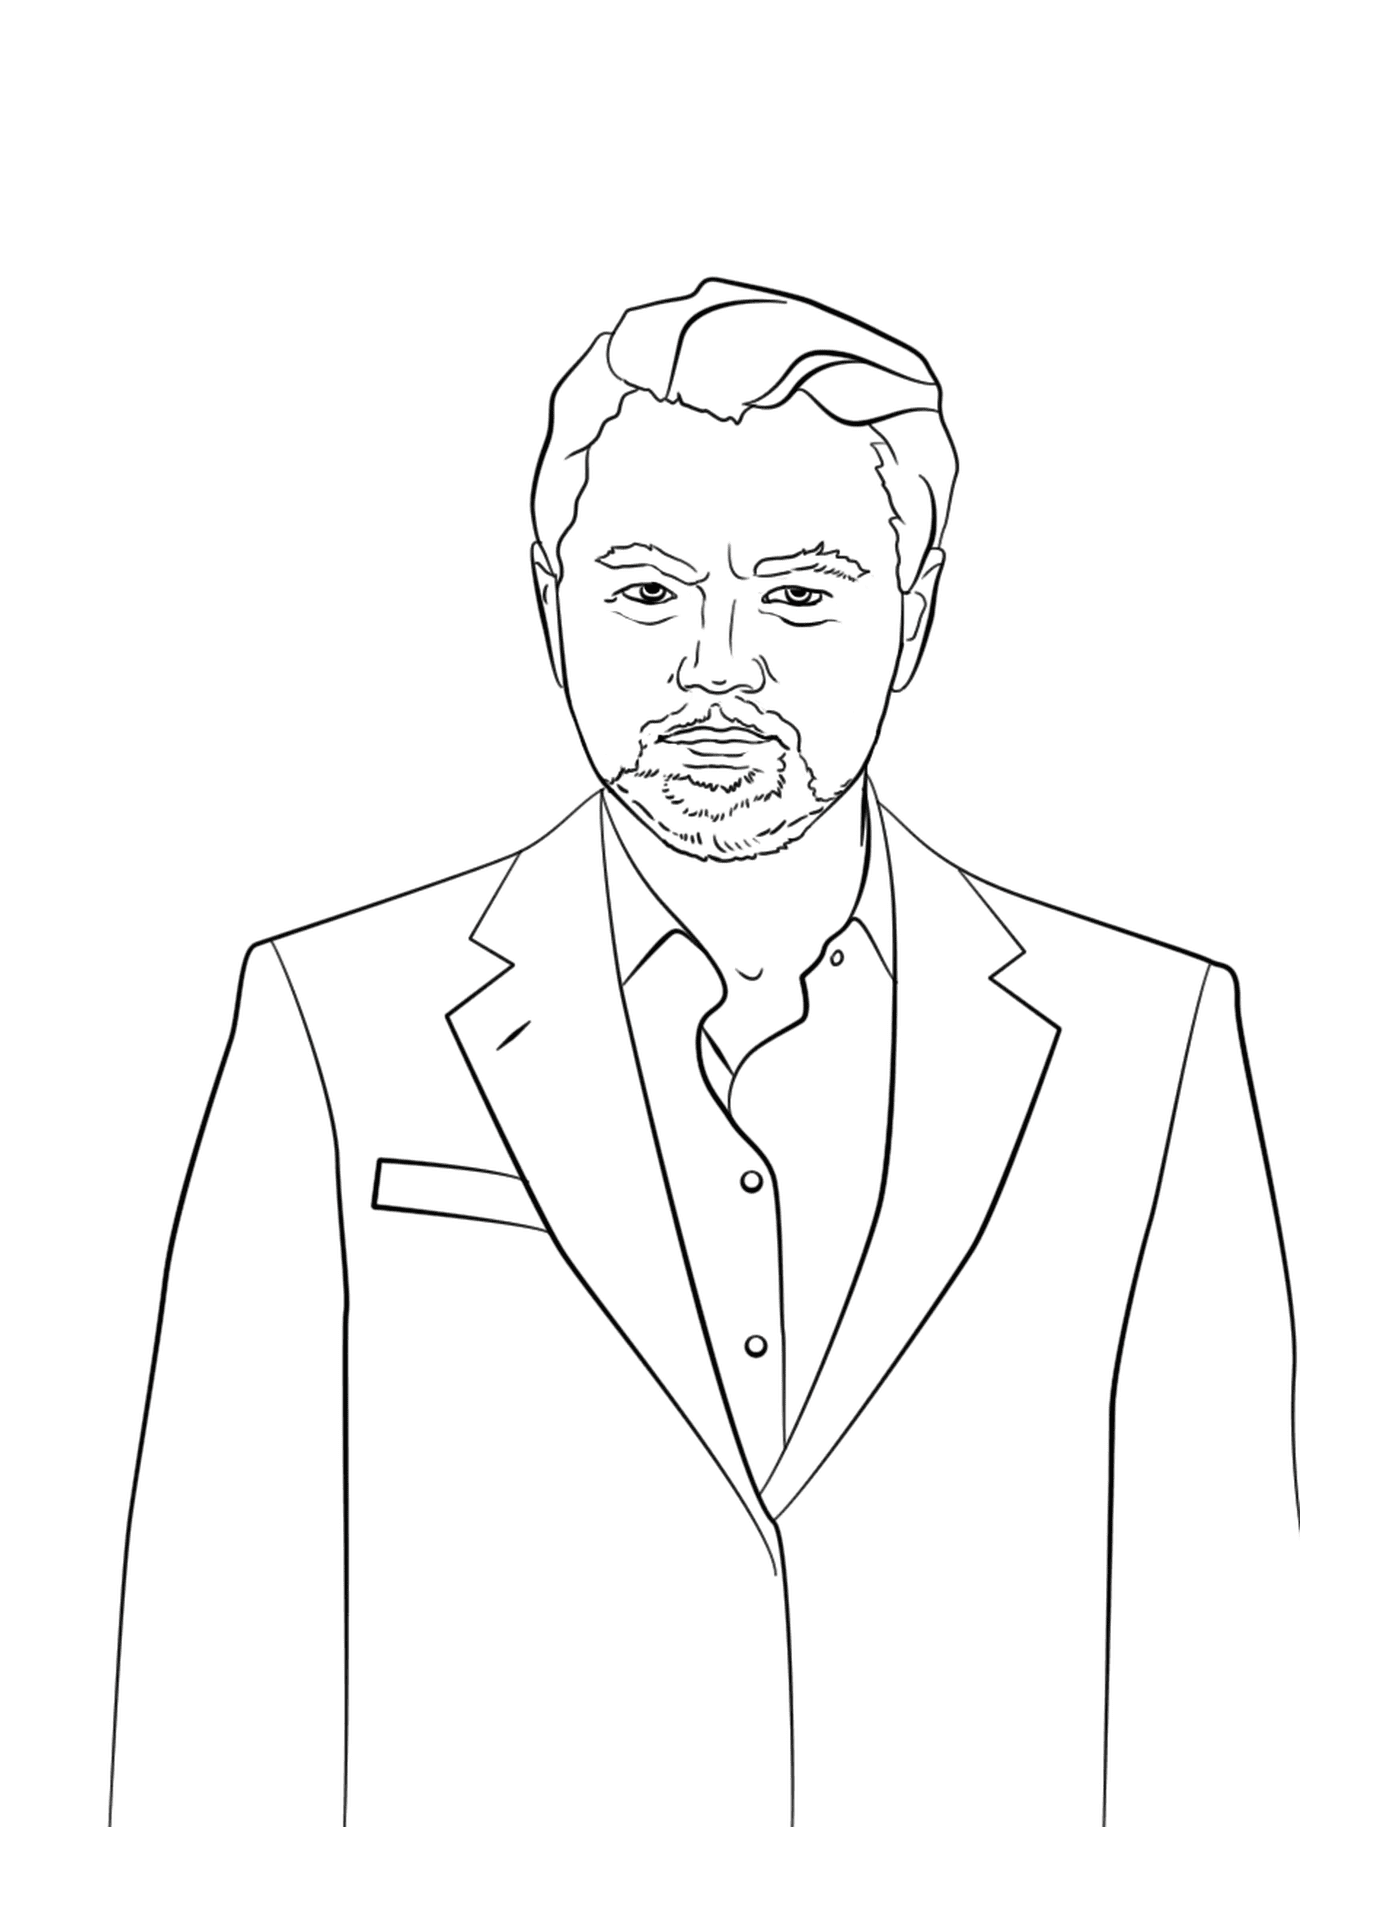  Leonardo DiCaprio, a Hollywood star 